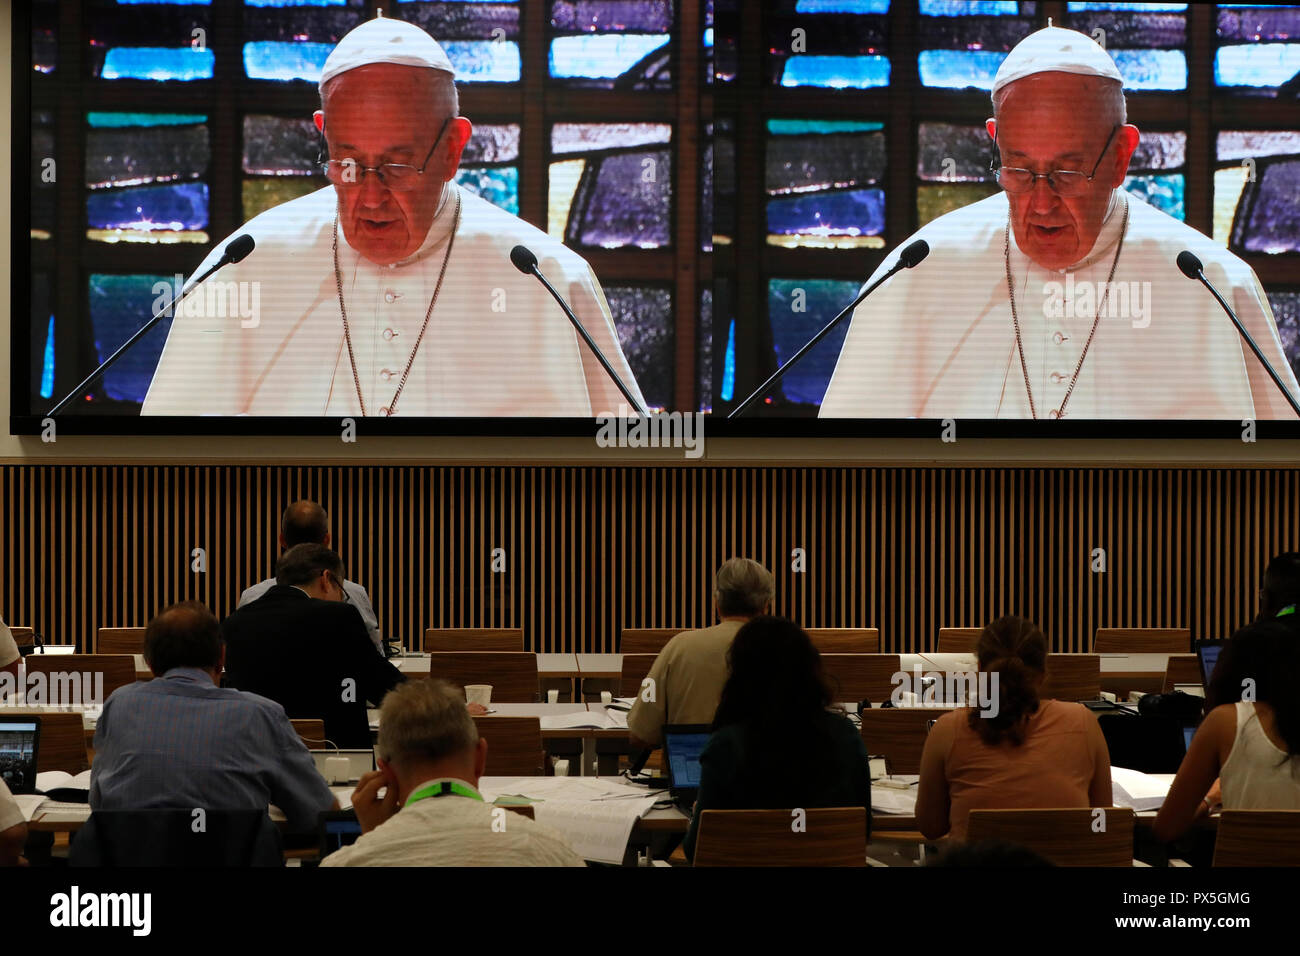 El 21 de junio de 2018, el Consejo Mundial de Iglesias recibe la visita del Papa a Francisco de la Iglesia Católica Romana. Oración ecuménica vista desde th Foto de stock